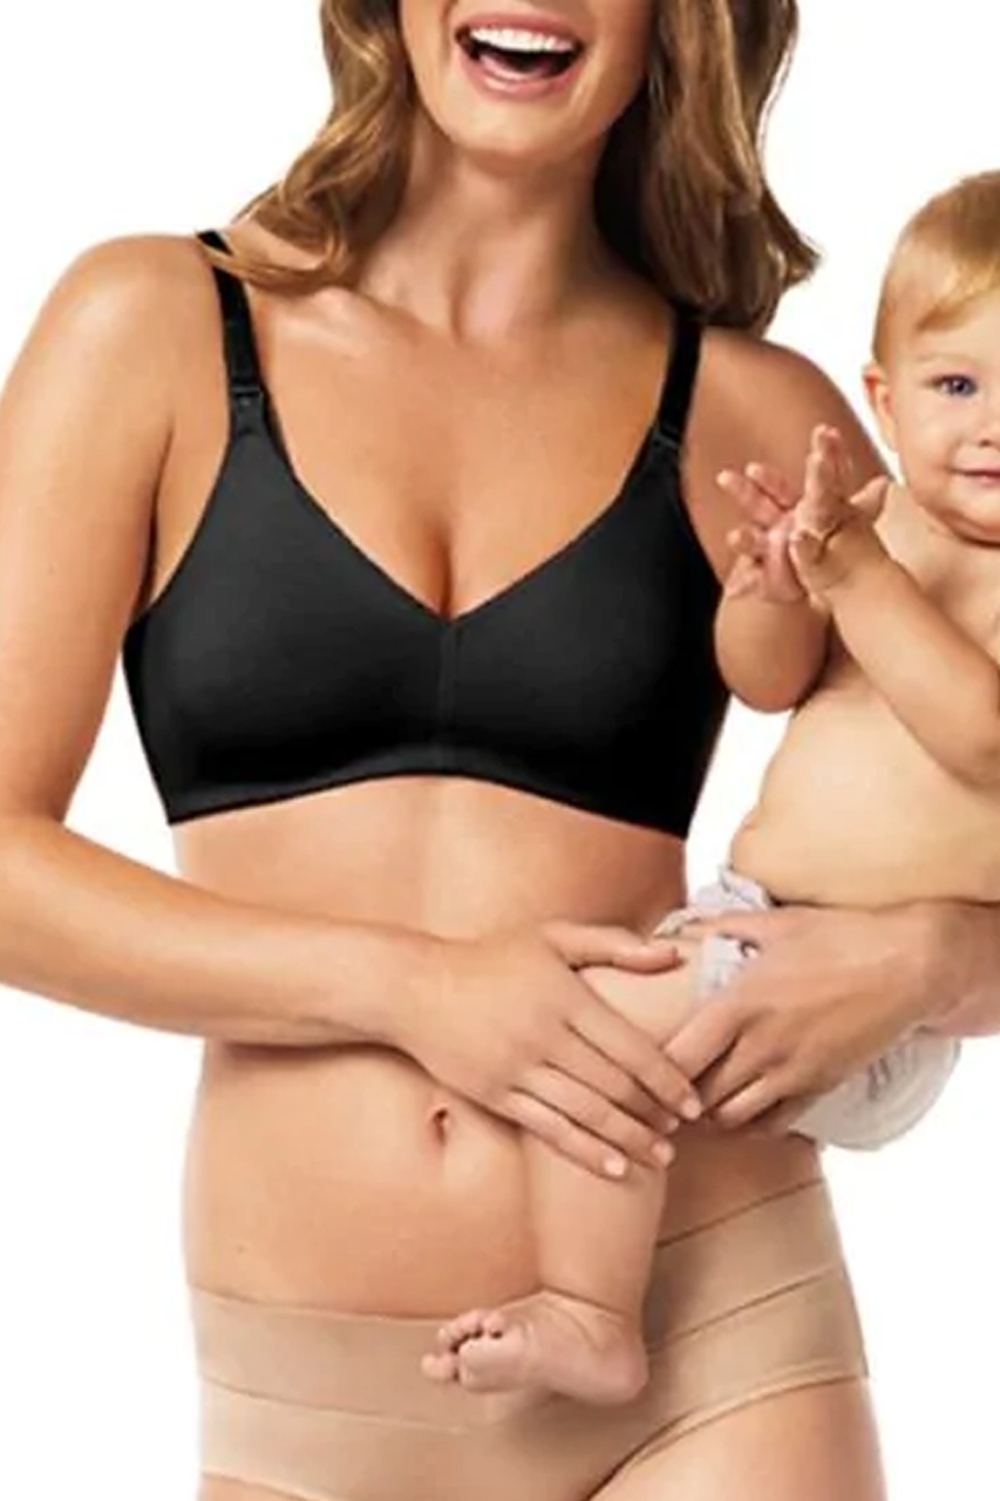 Warner's Nursing Bras & Maternity Panties in Maternity Clothing 